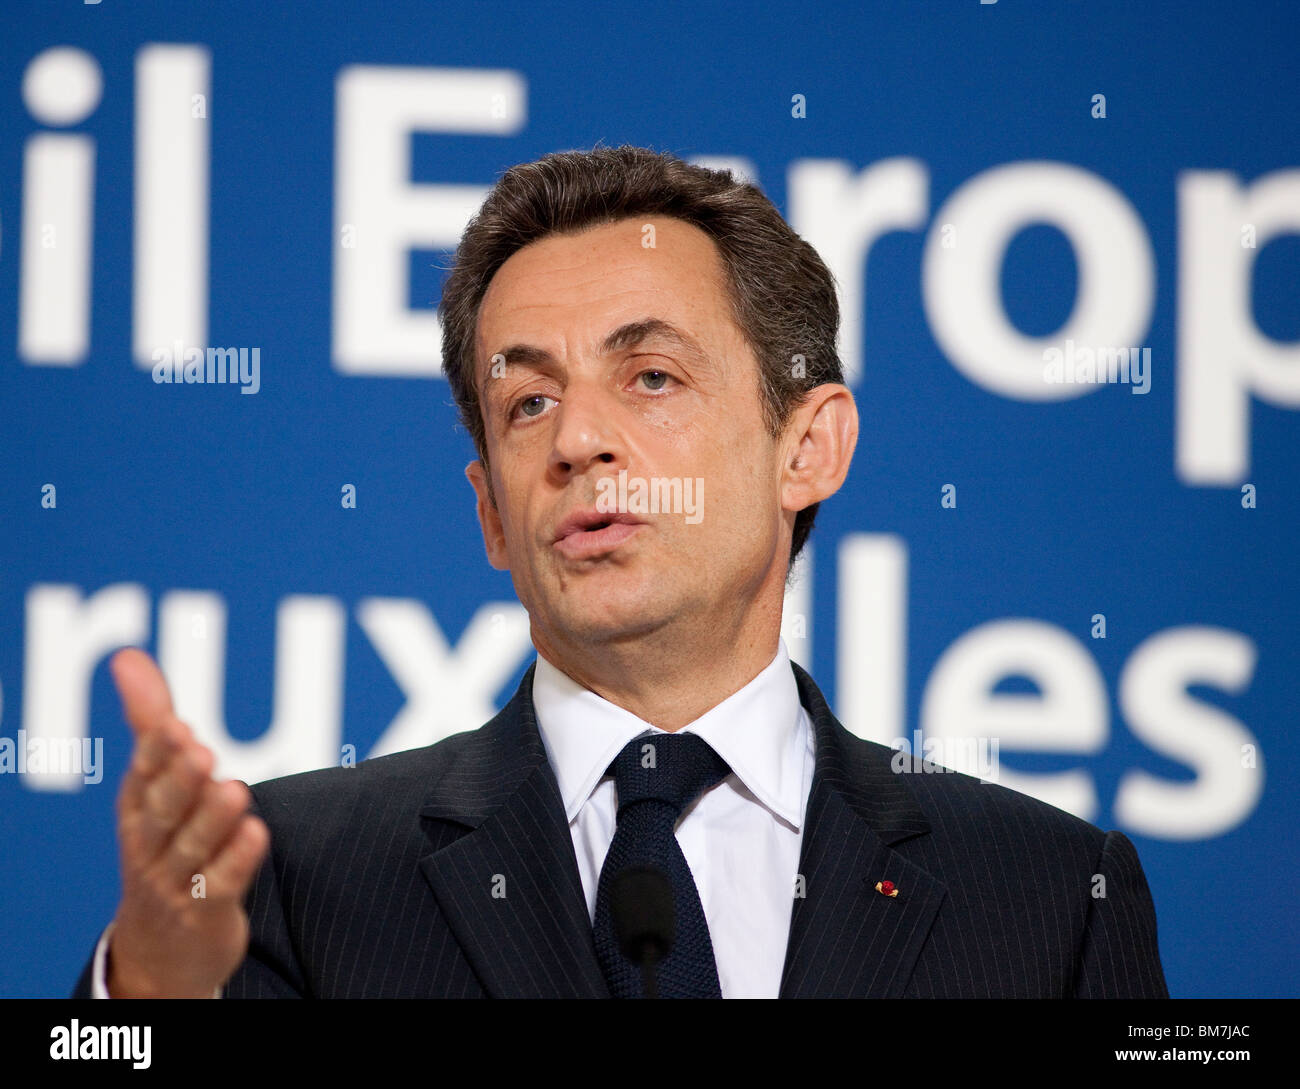 Bruxelles : Nicolas Sarkozy à la réunion du Conseil européen (2010/03/25) Banque D'Images